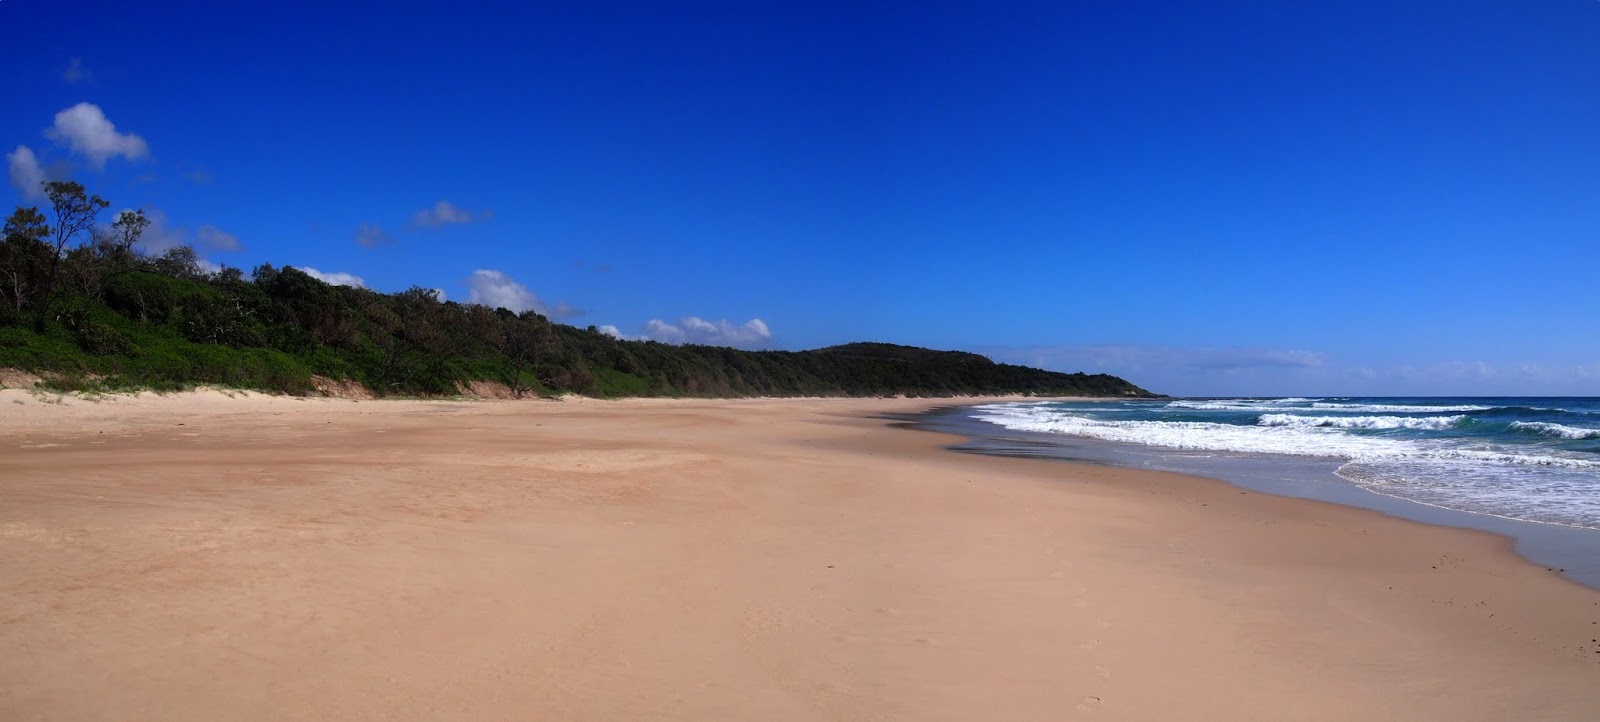 Foto de Little Shelley Beach com areia brilhante superfície